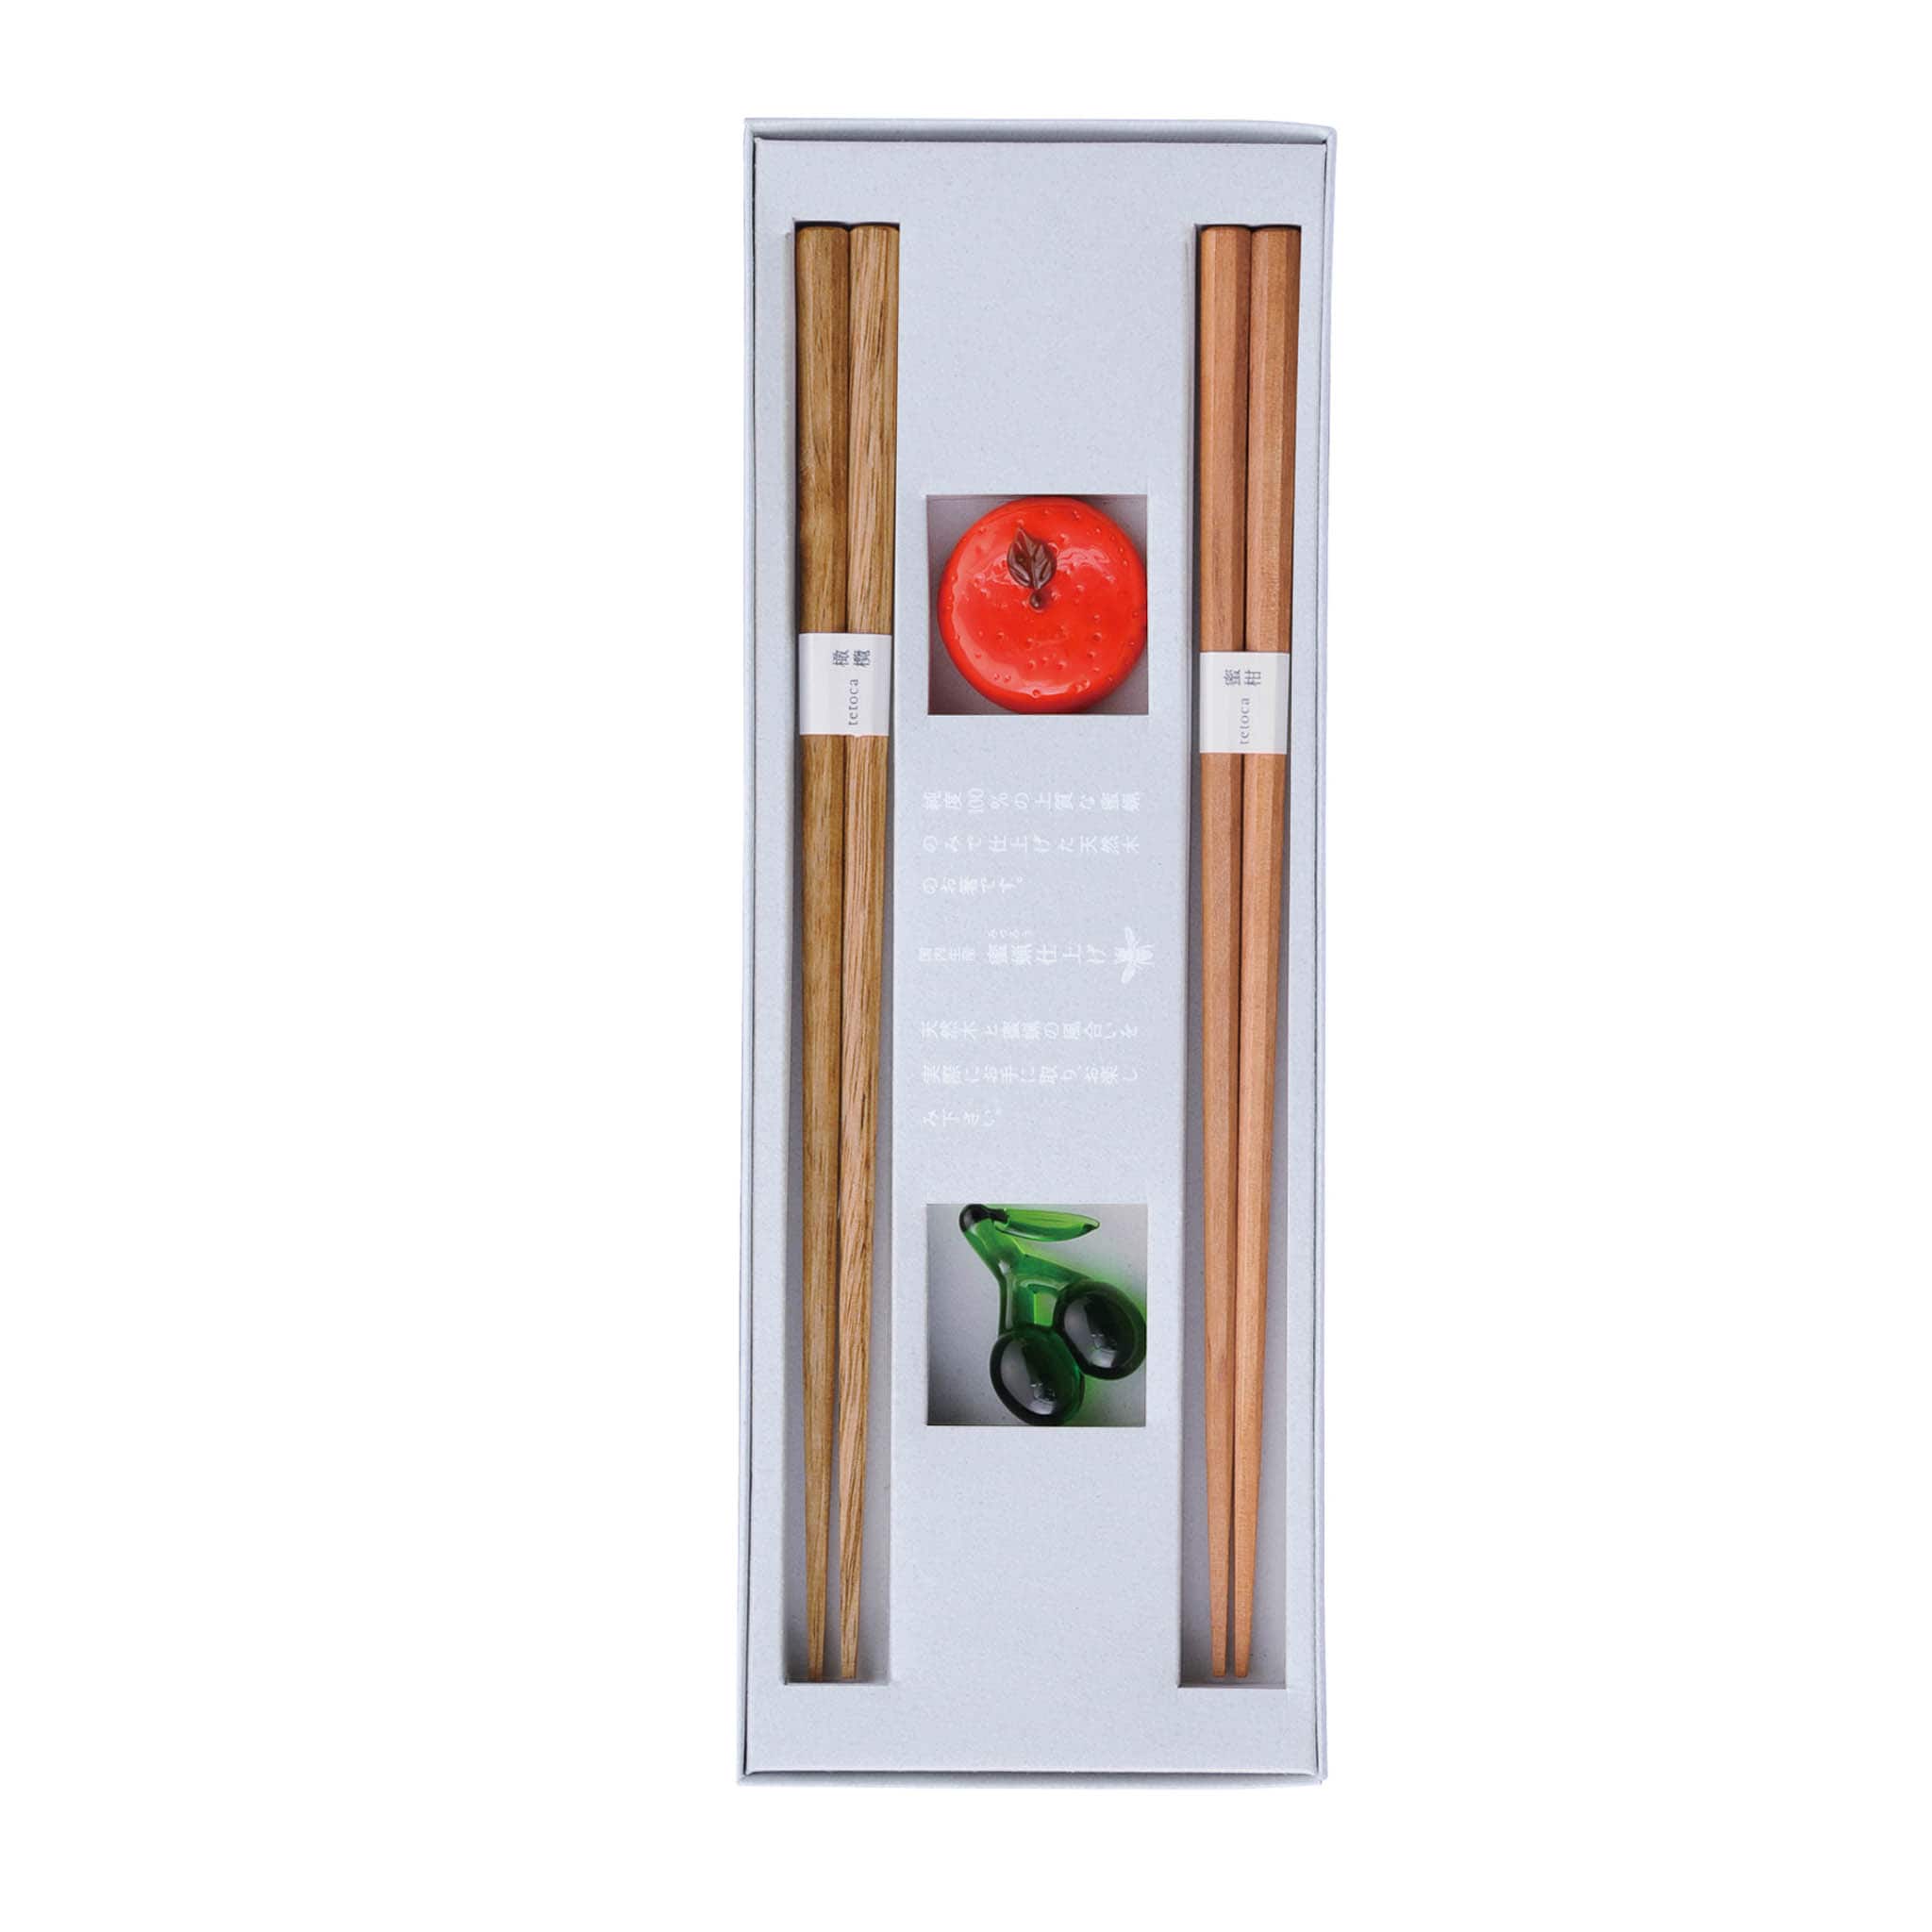 Olive & Mandarine Wood Chopstick Gift Set with Rests, 18cm